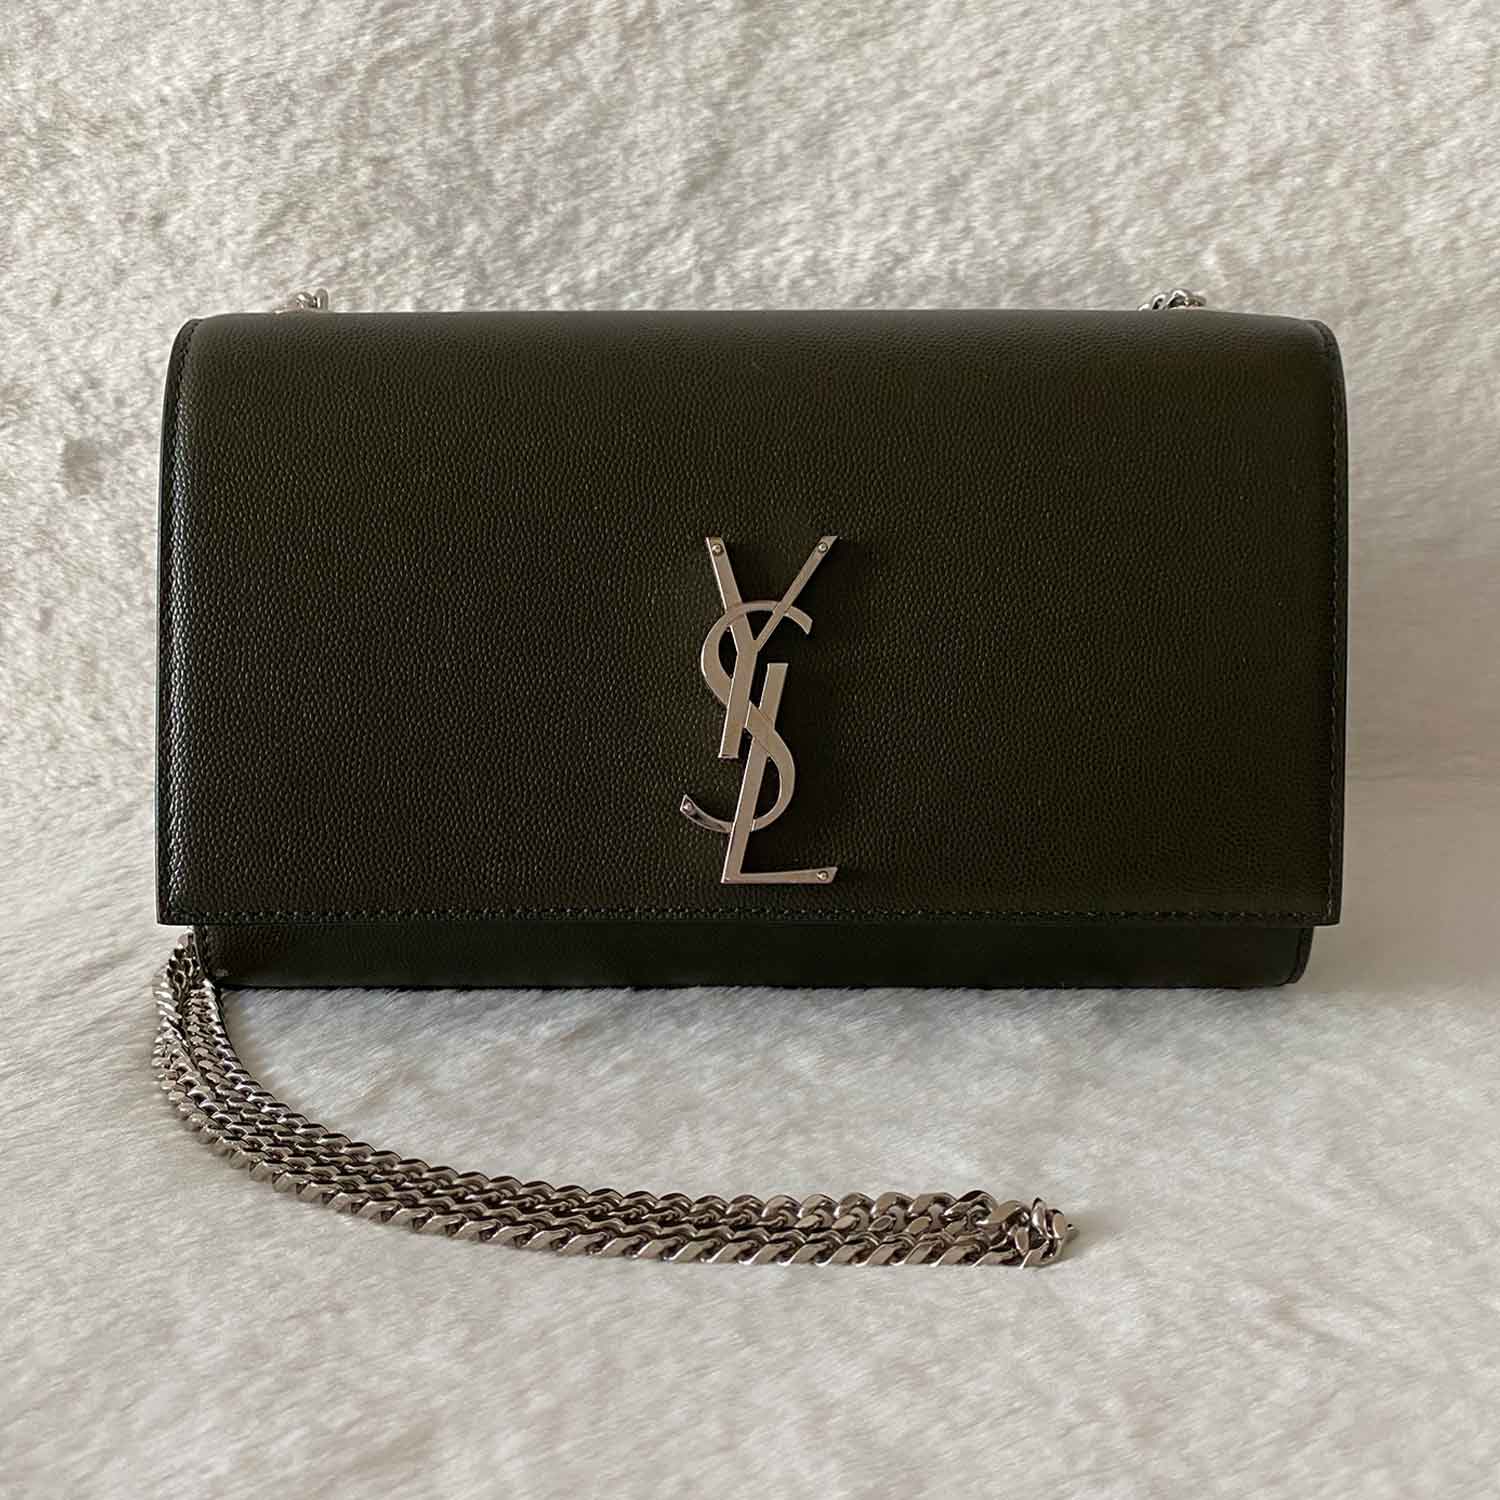 Shop authentic Saint Laurent Kate Medium Shoulder Bag at revogue for ...